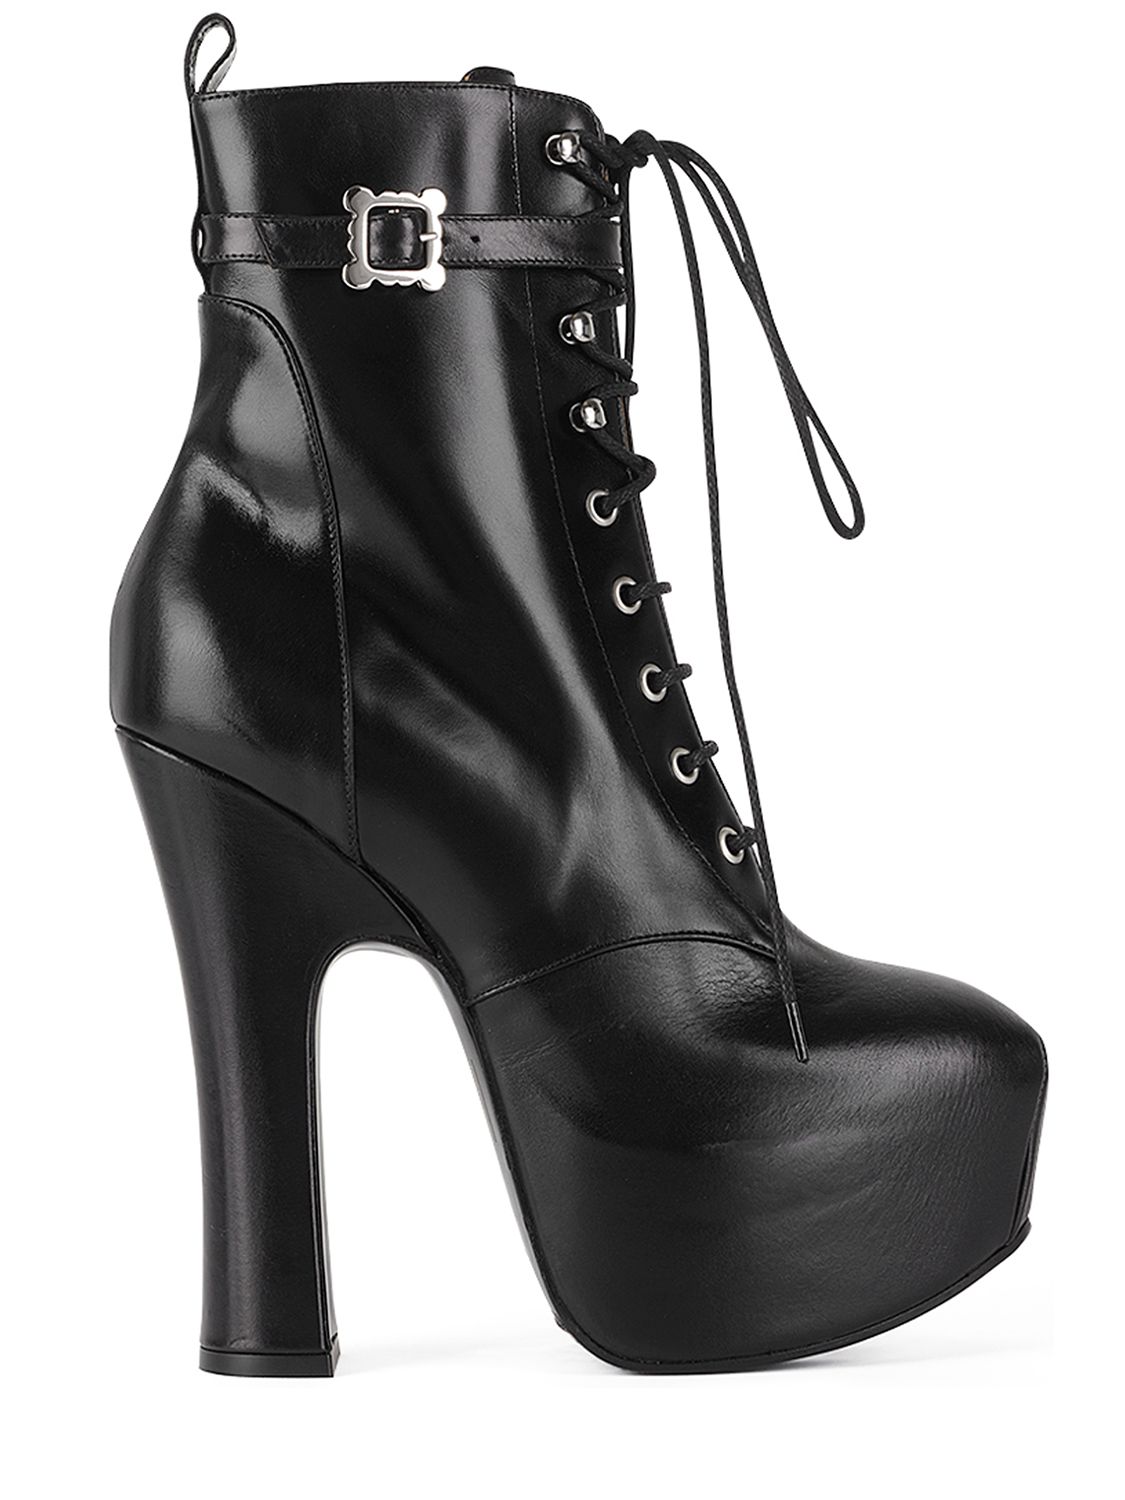 Mm Pleasure Leather Ankle Boots - VIVIENNE WESTWOOD - Modalova